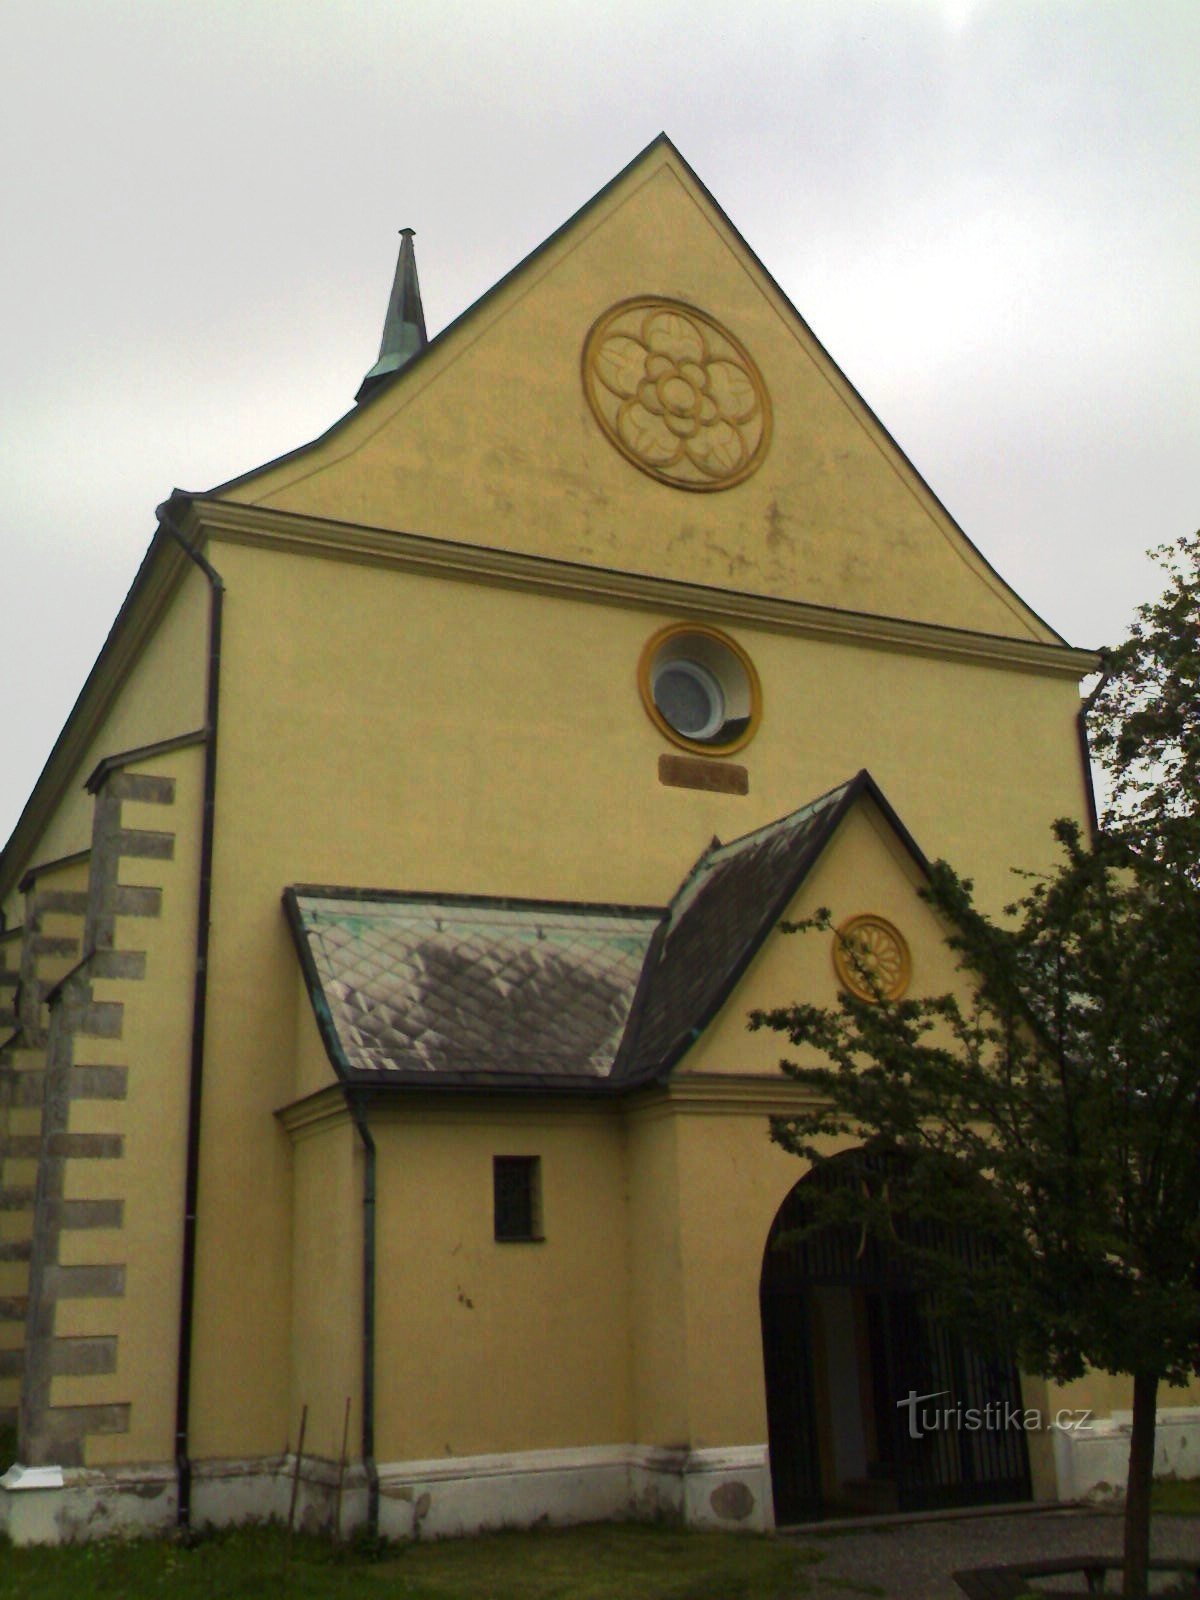 Rovensko pod Troskami - Chiesa di S. Venceslao